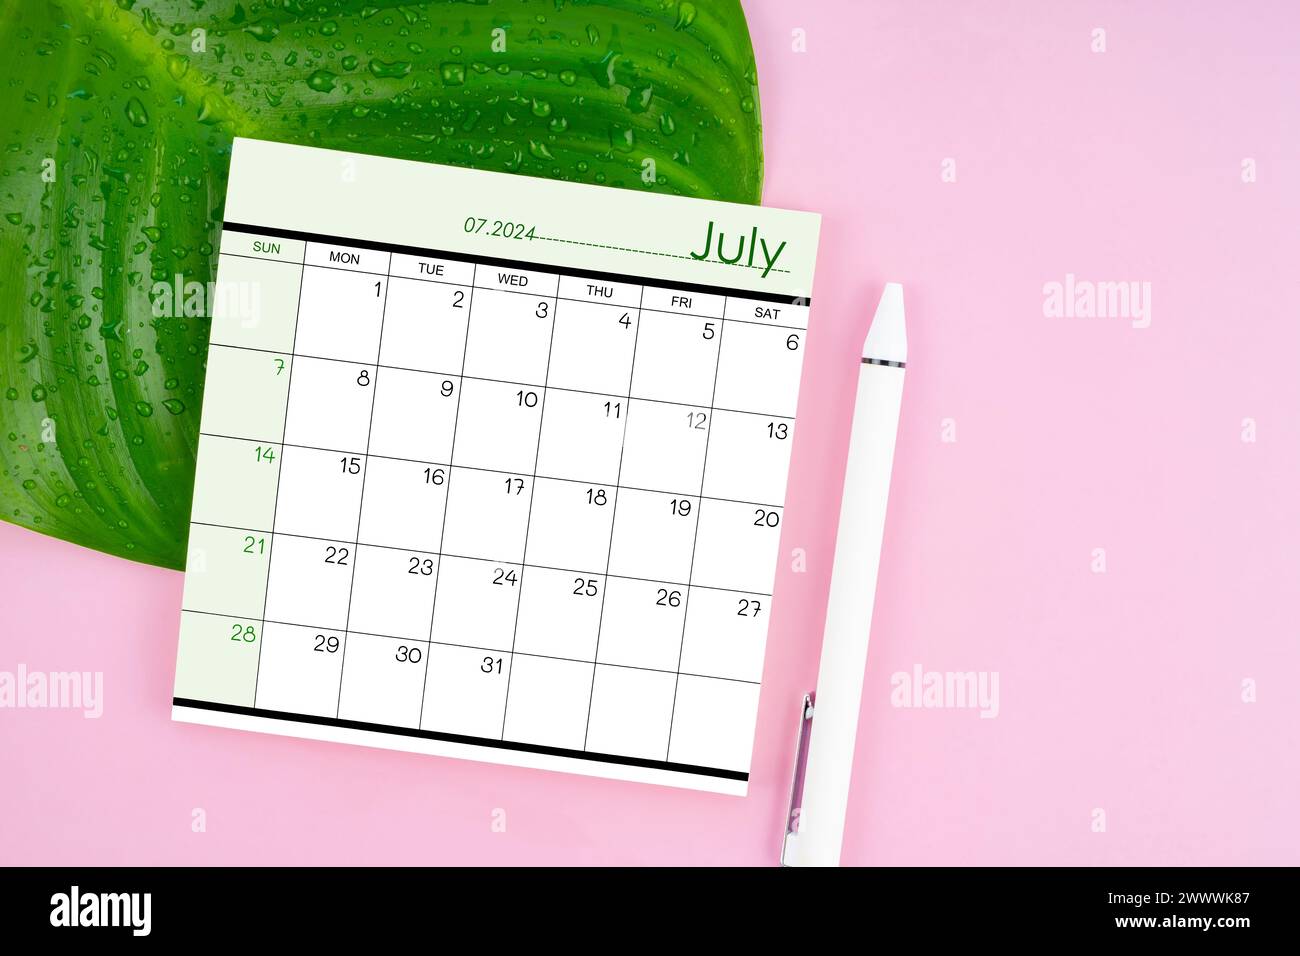 Juillet 2024 page de calendrier et feuille verte fraîche avec des gouttes d'eau sur fond de couleur rose. Banque D'Images